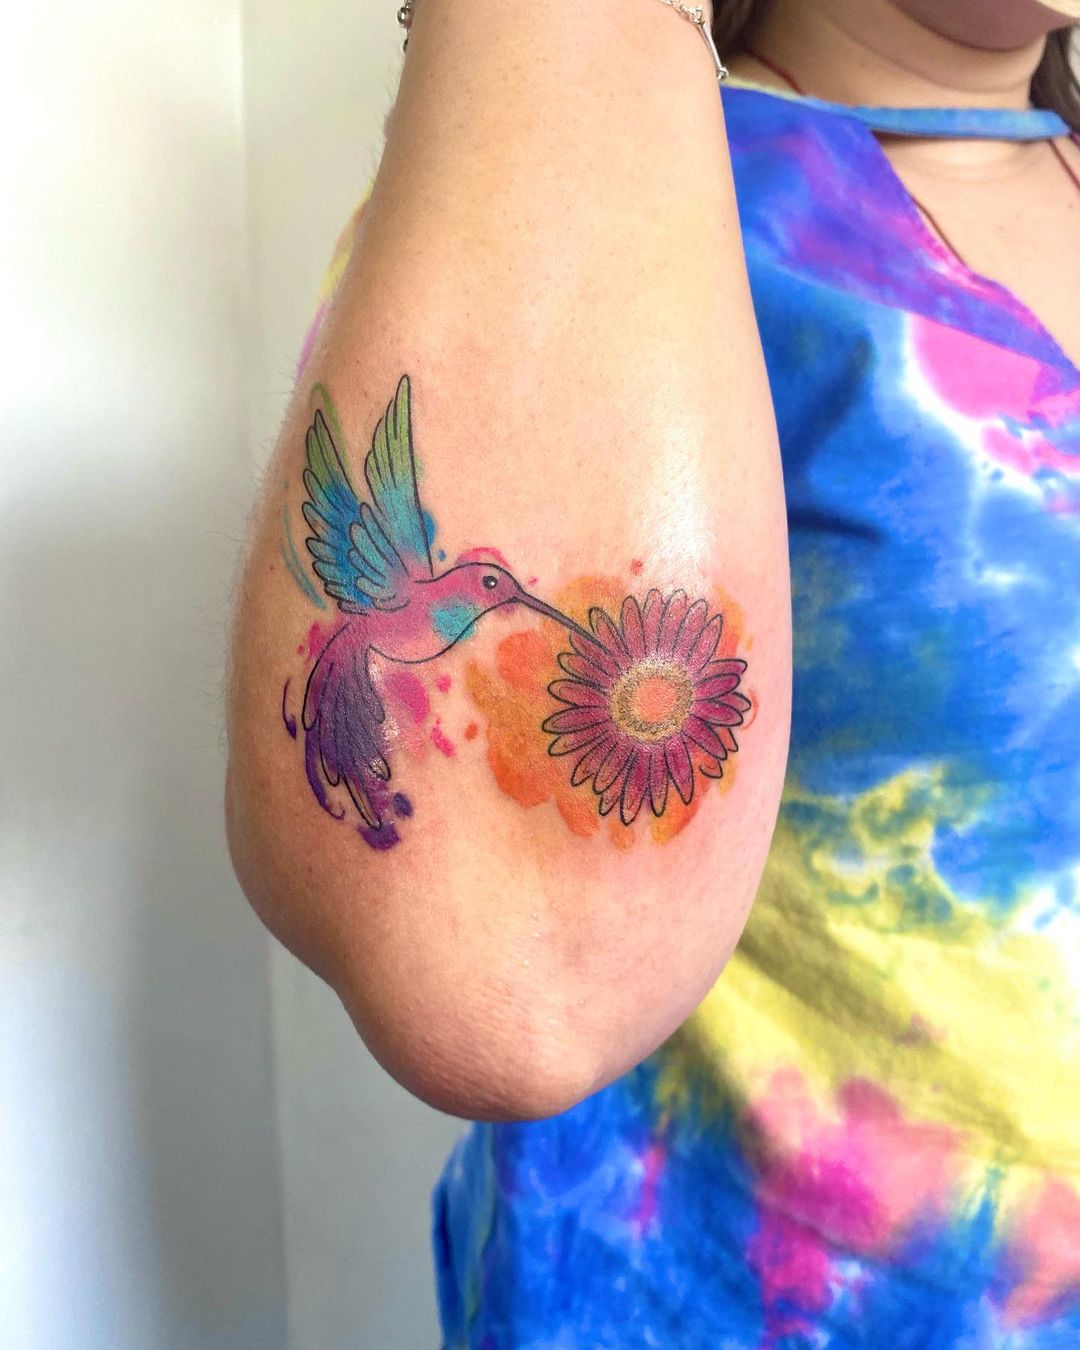 Tatuaje de colibrí colorido rojo en el brazo.